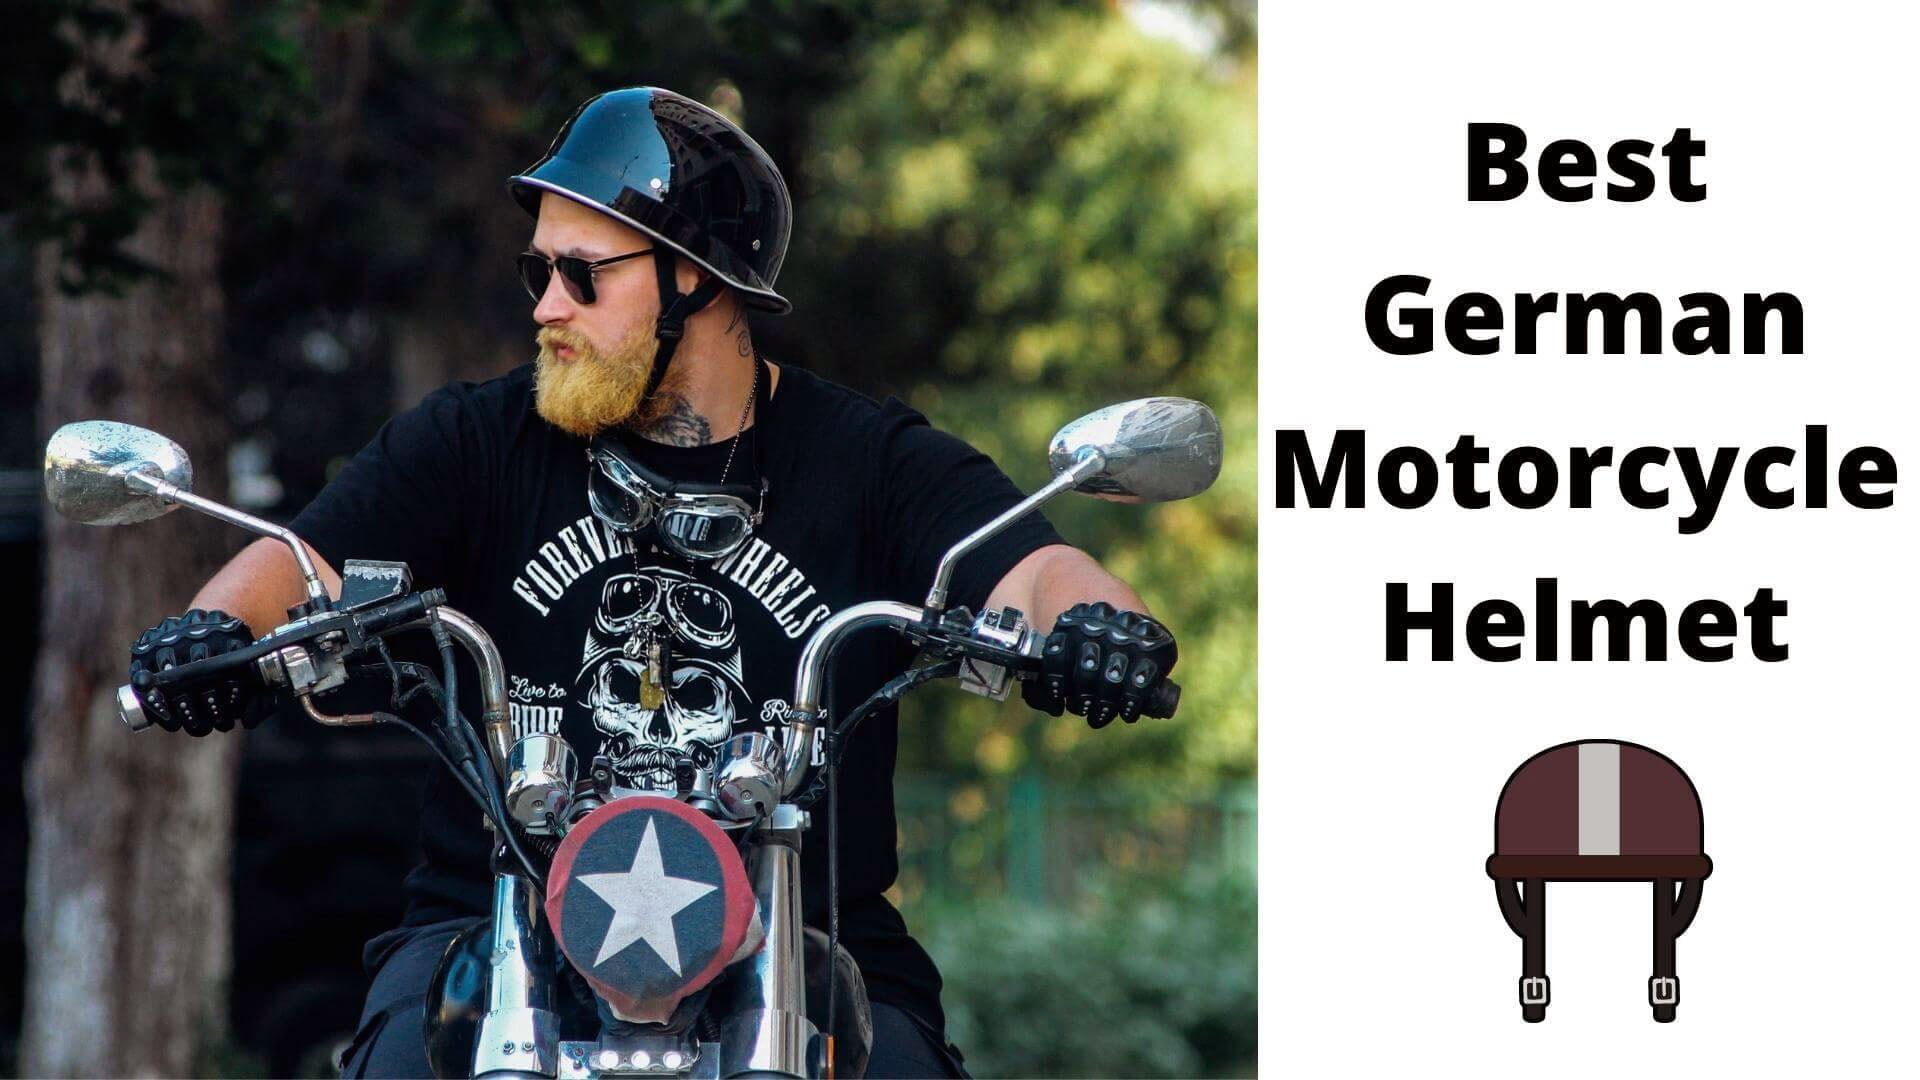 Best German Motorcycle Helmet